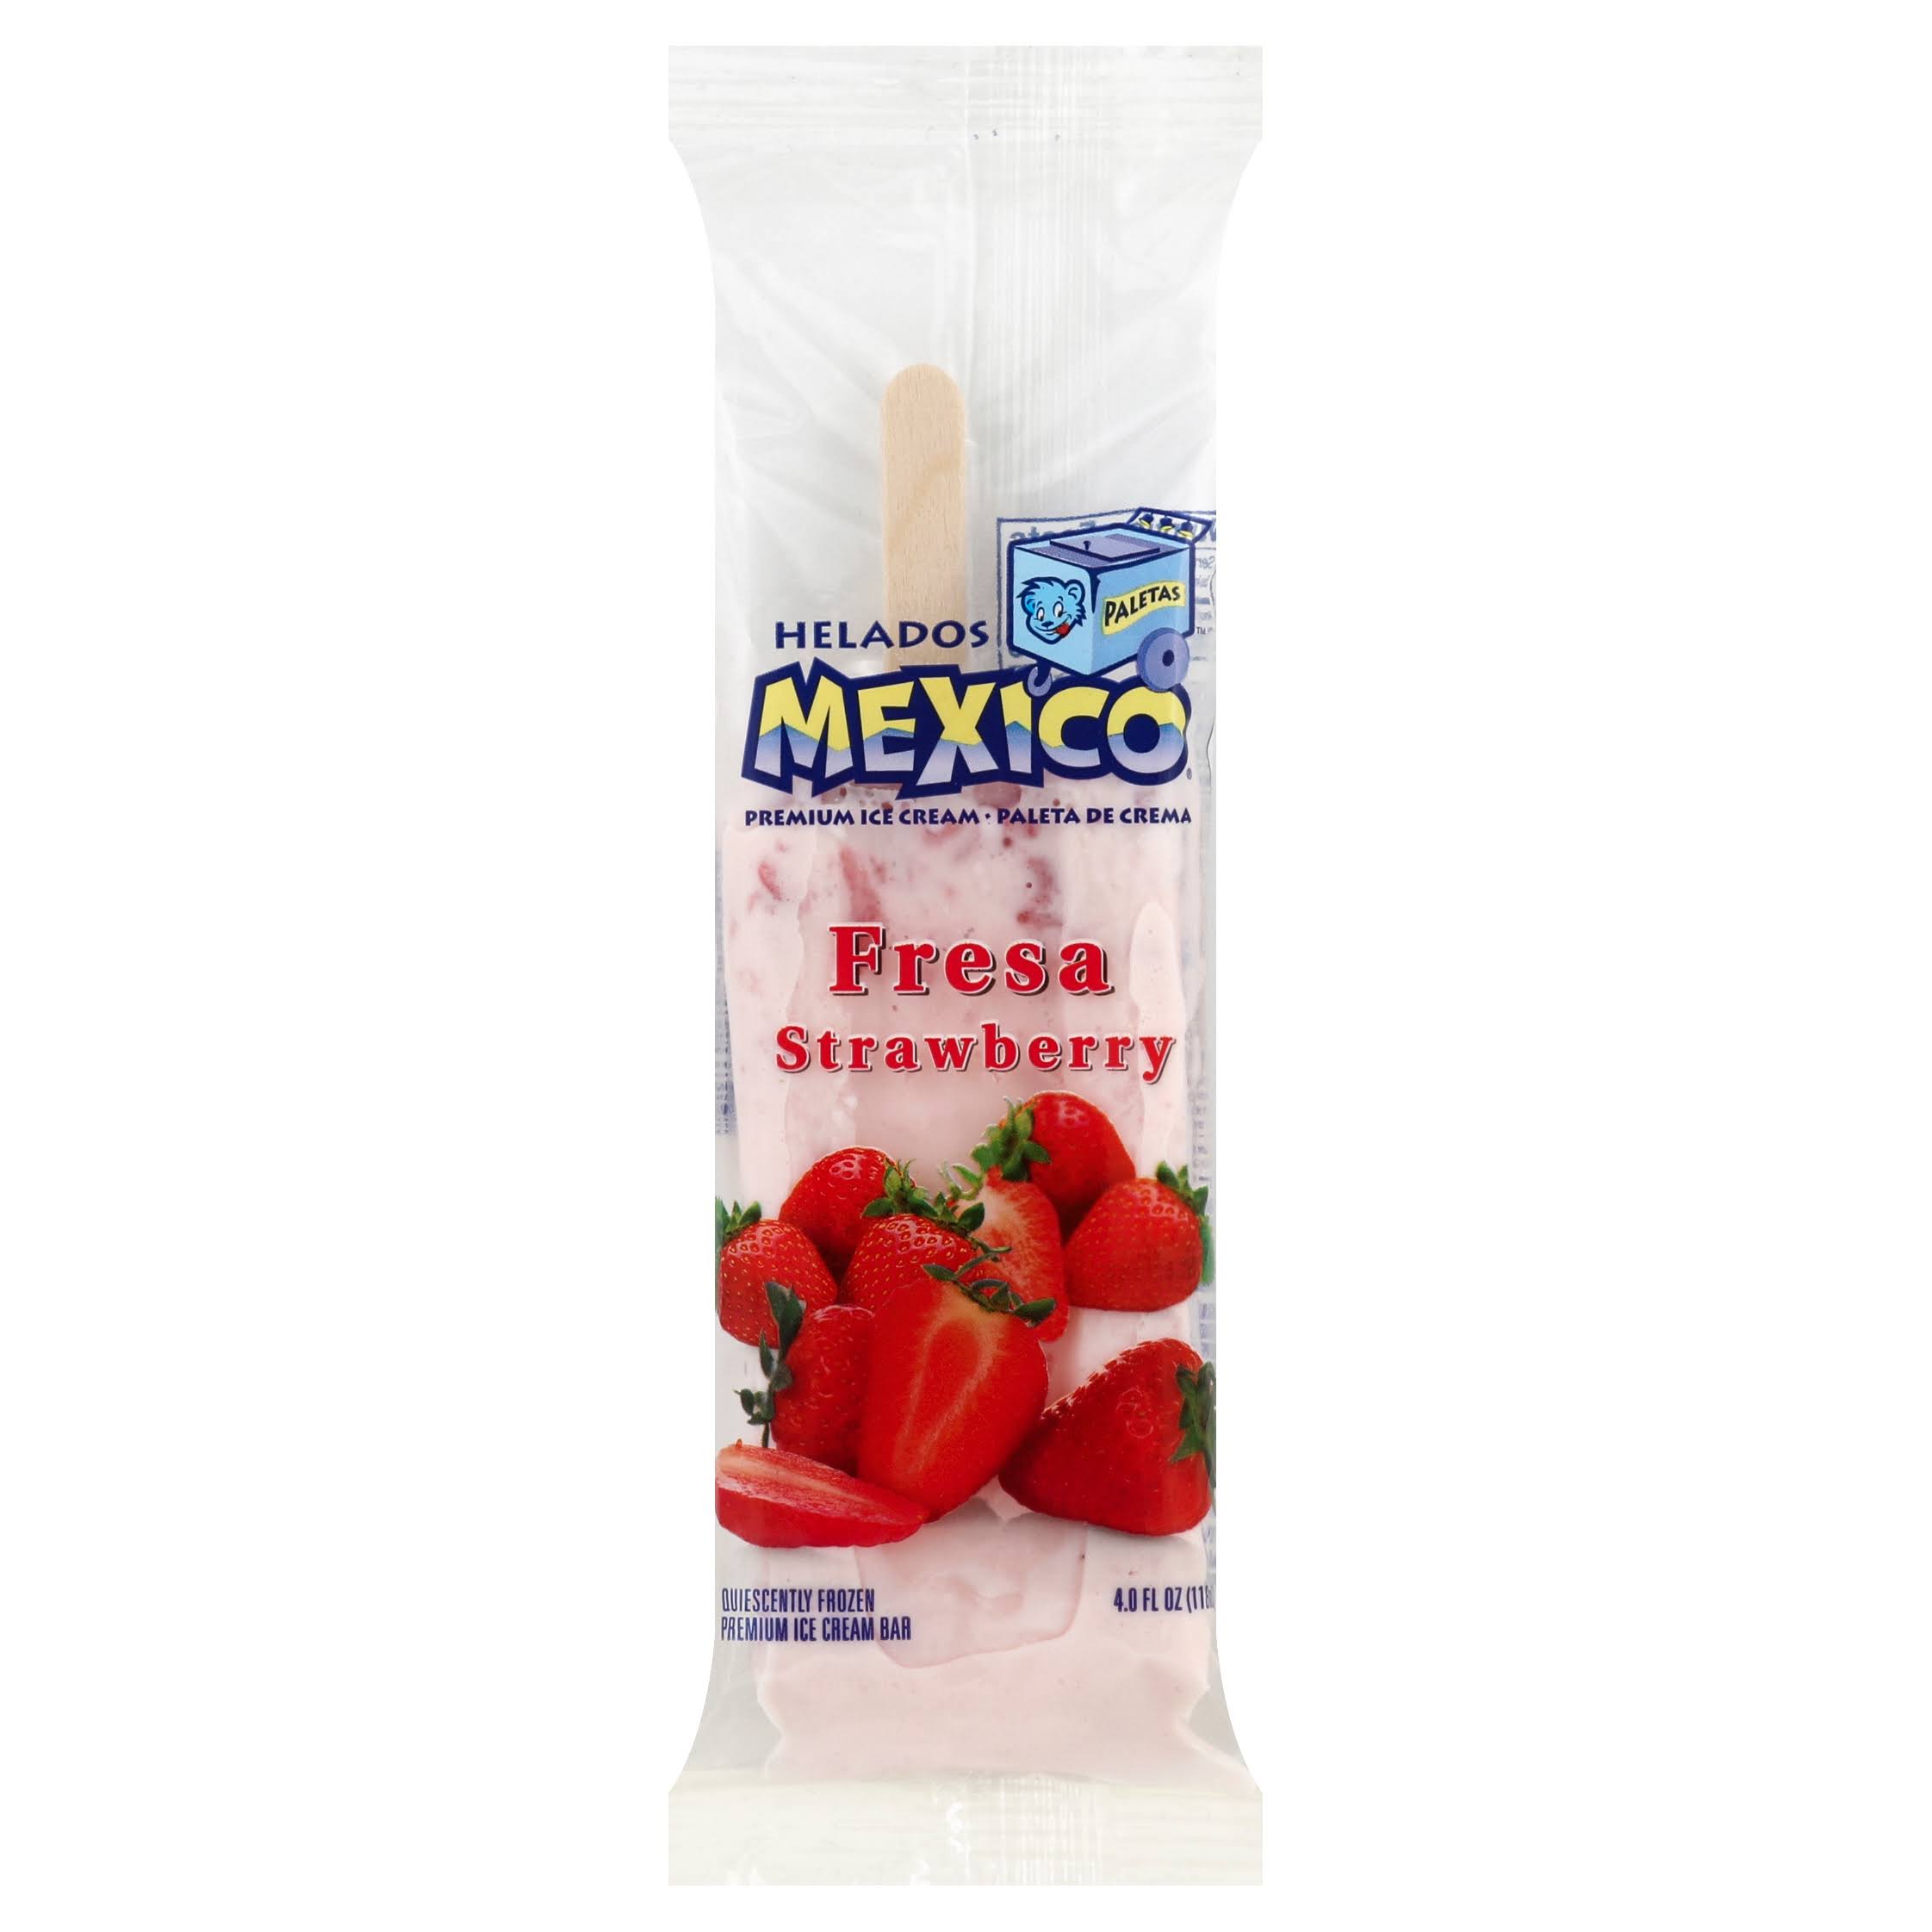 Helados Mexico Premium Ice Cream Bar - Strawberry, 4 oz